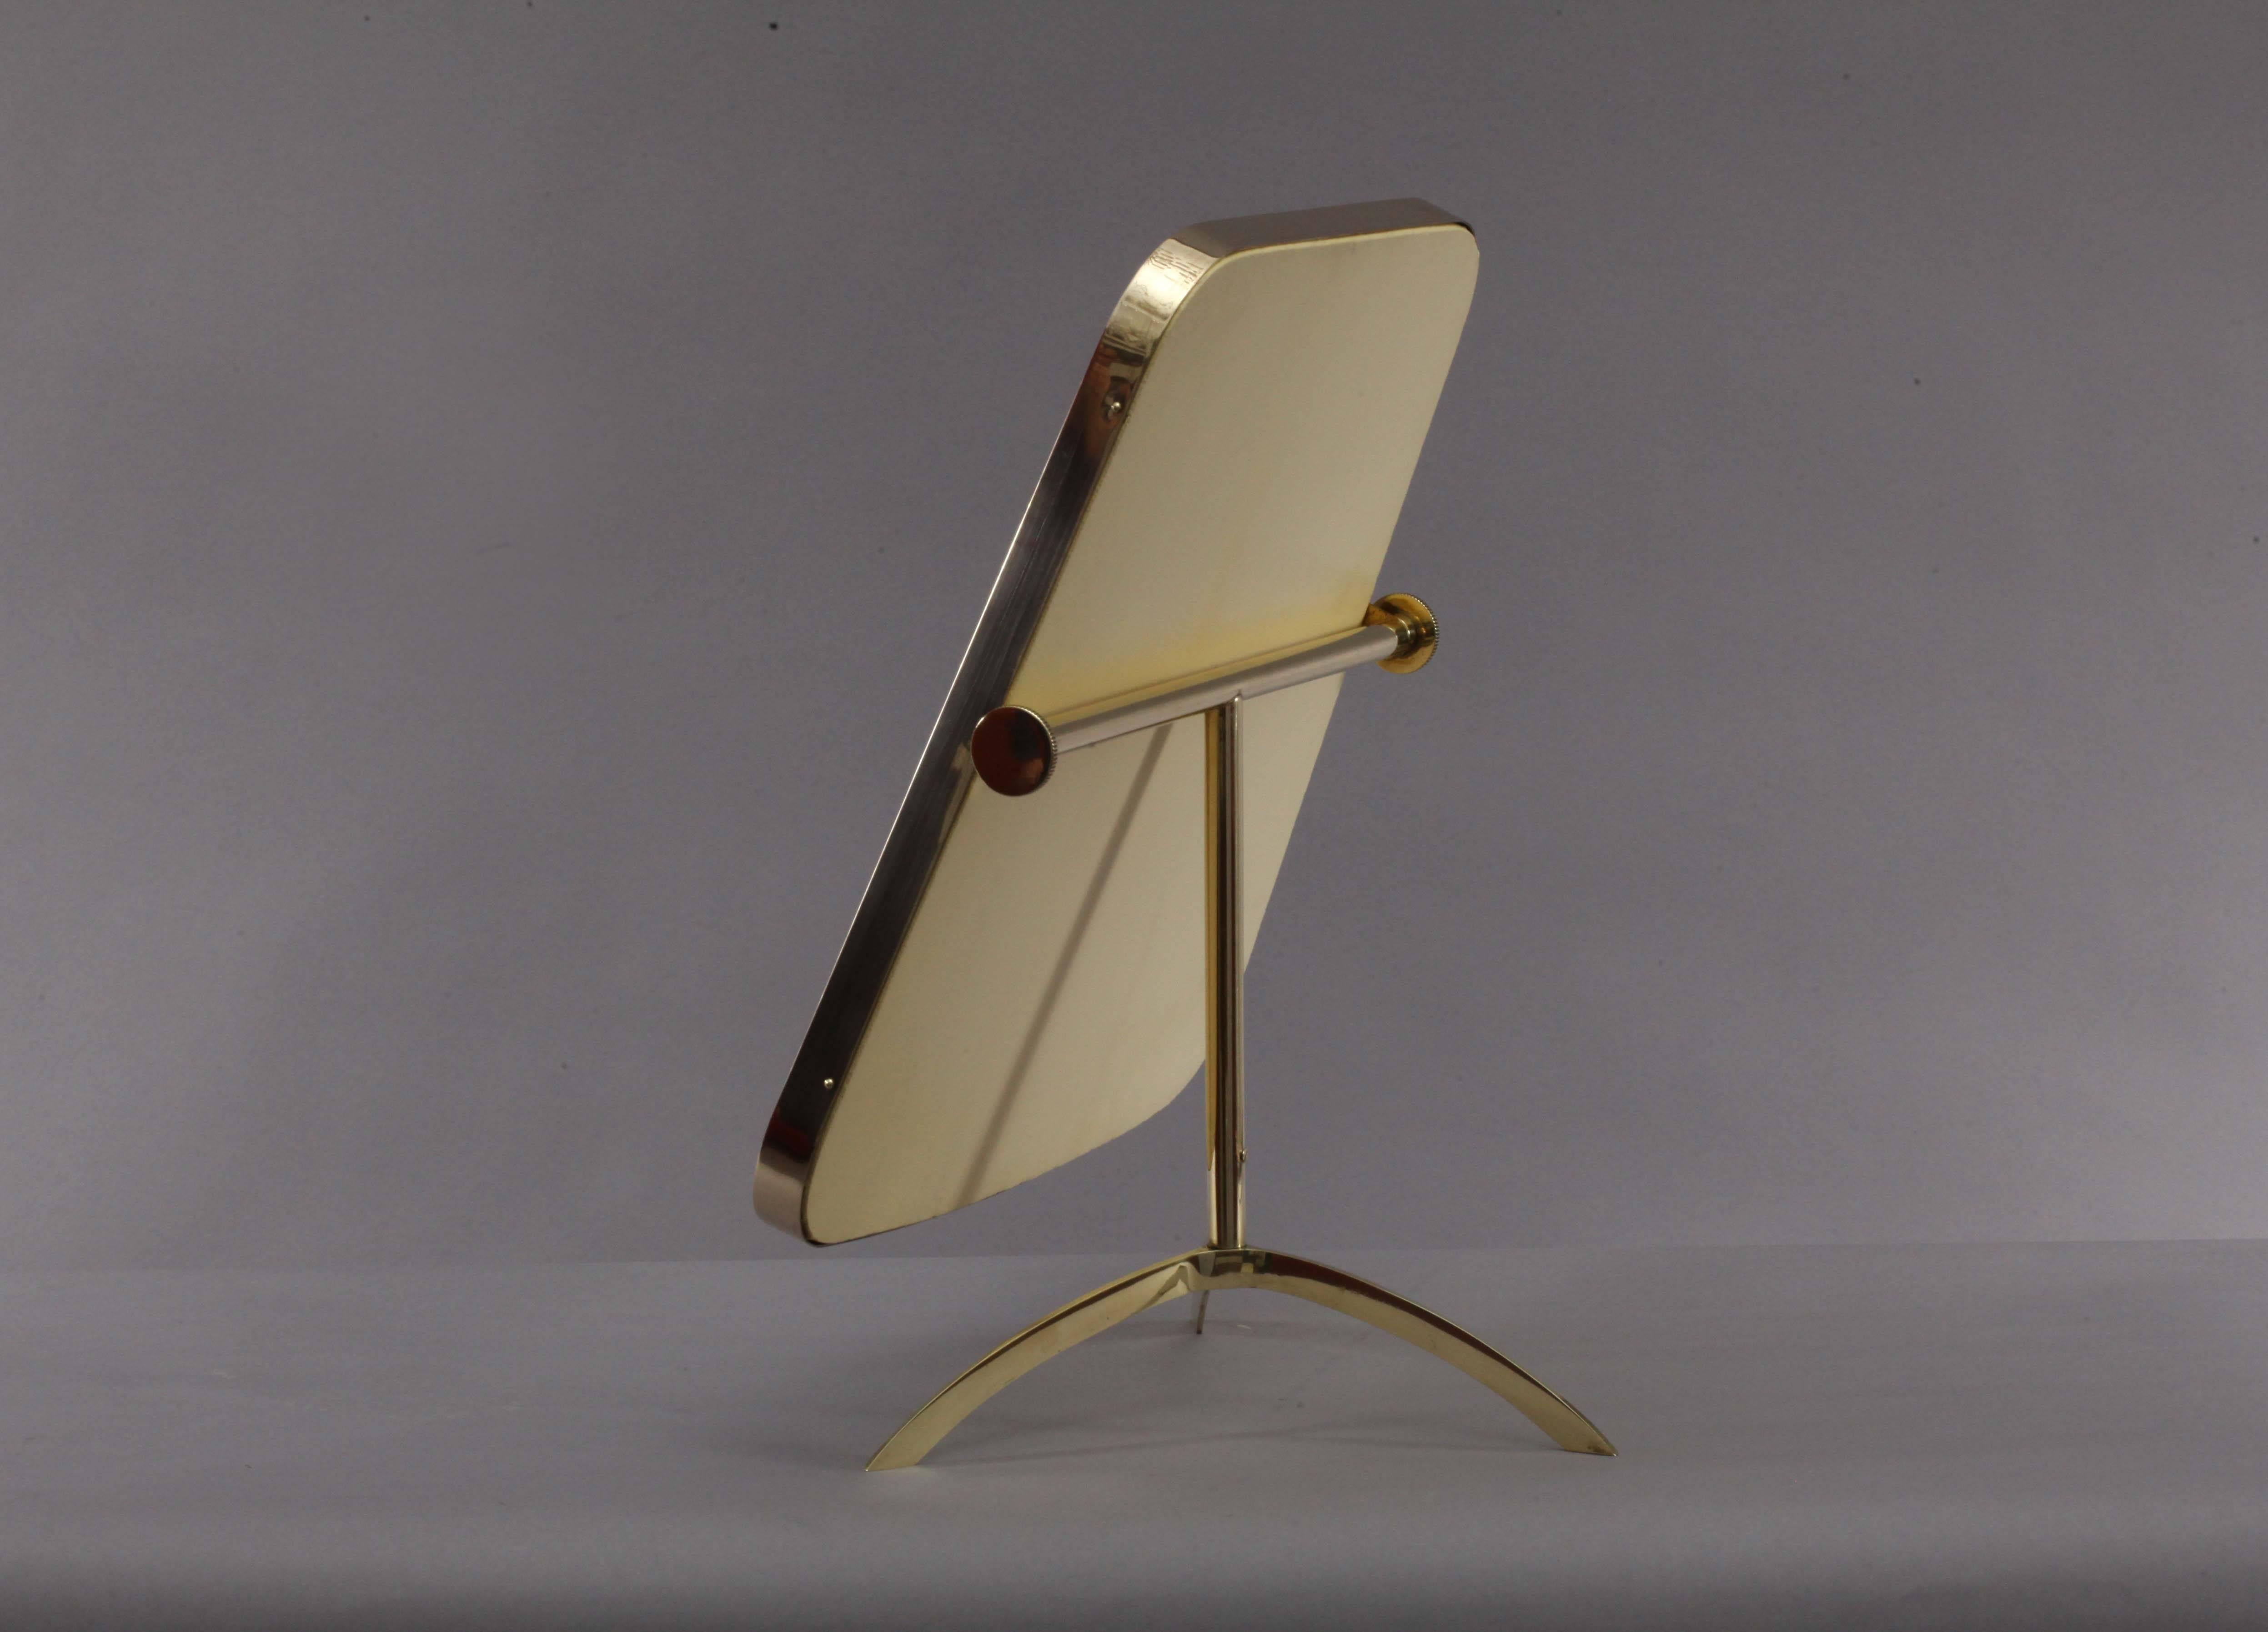 Vanity mirror,
Münchner Werkstätten,
Germany, 1960
brass base.